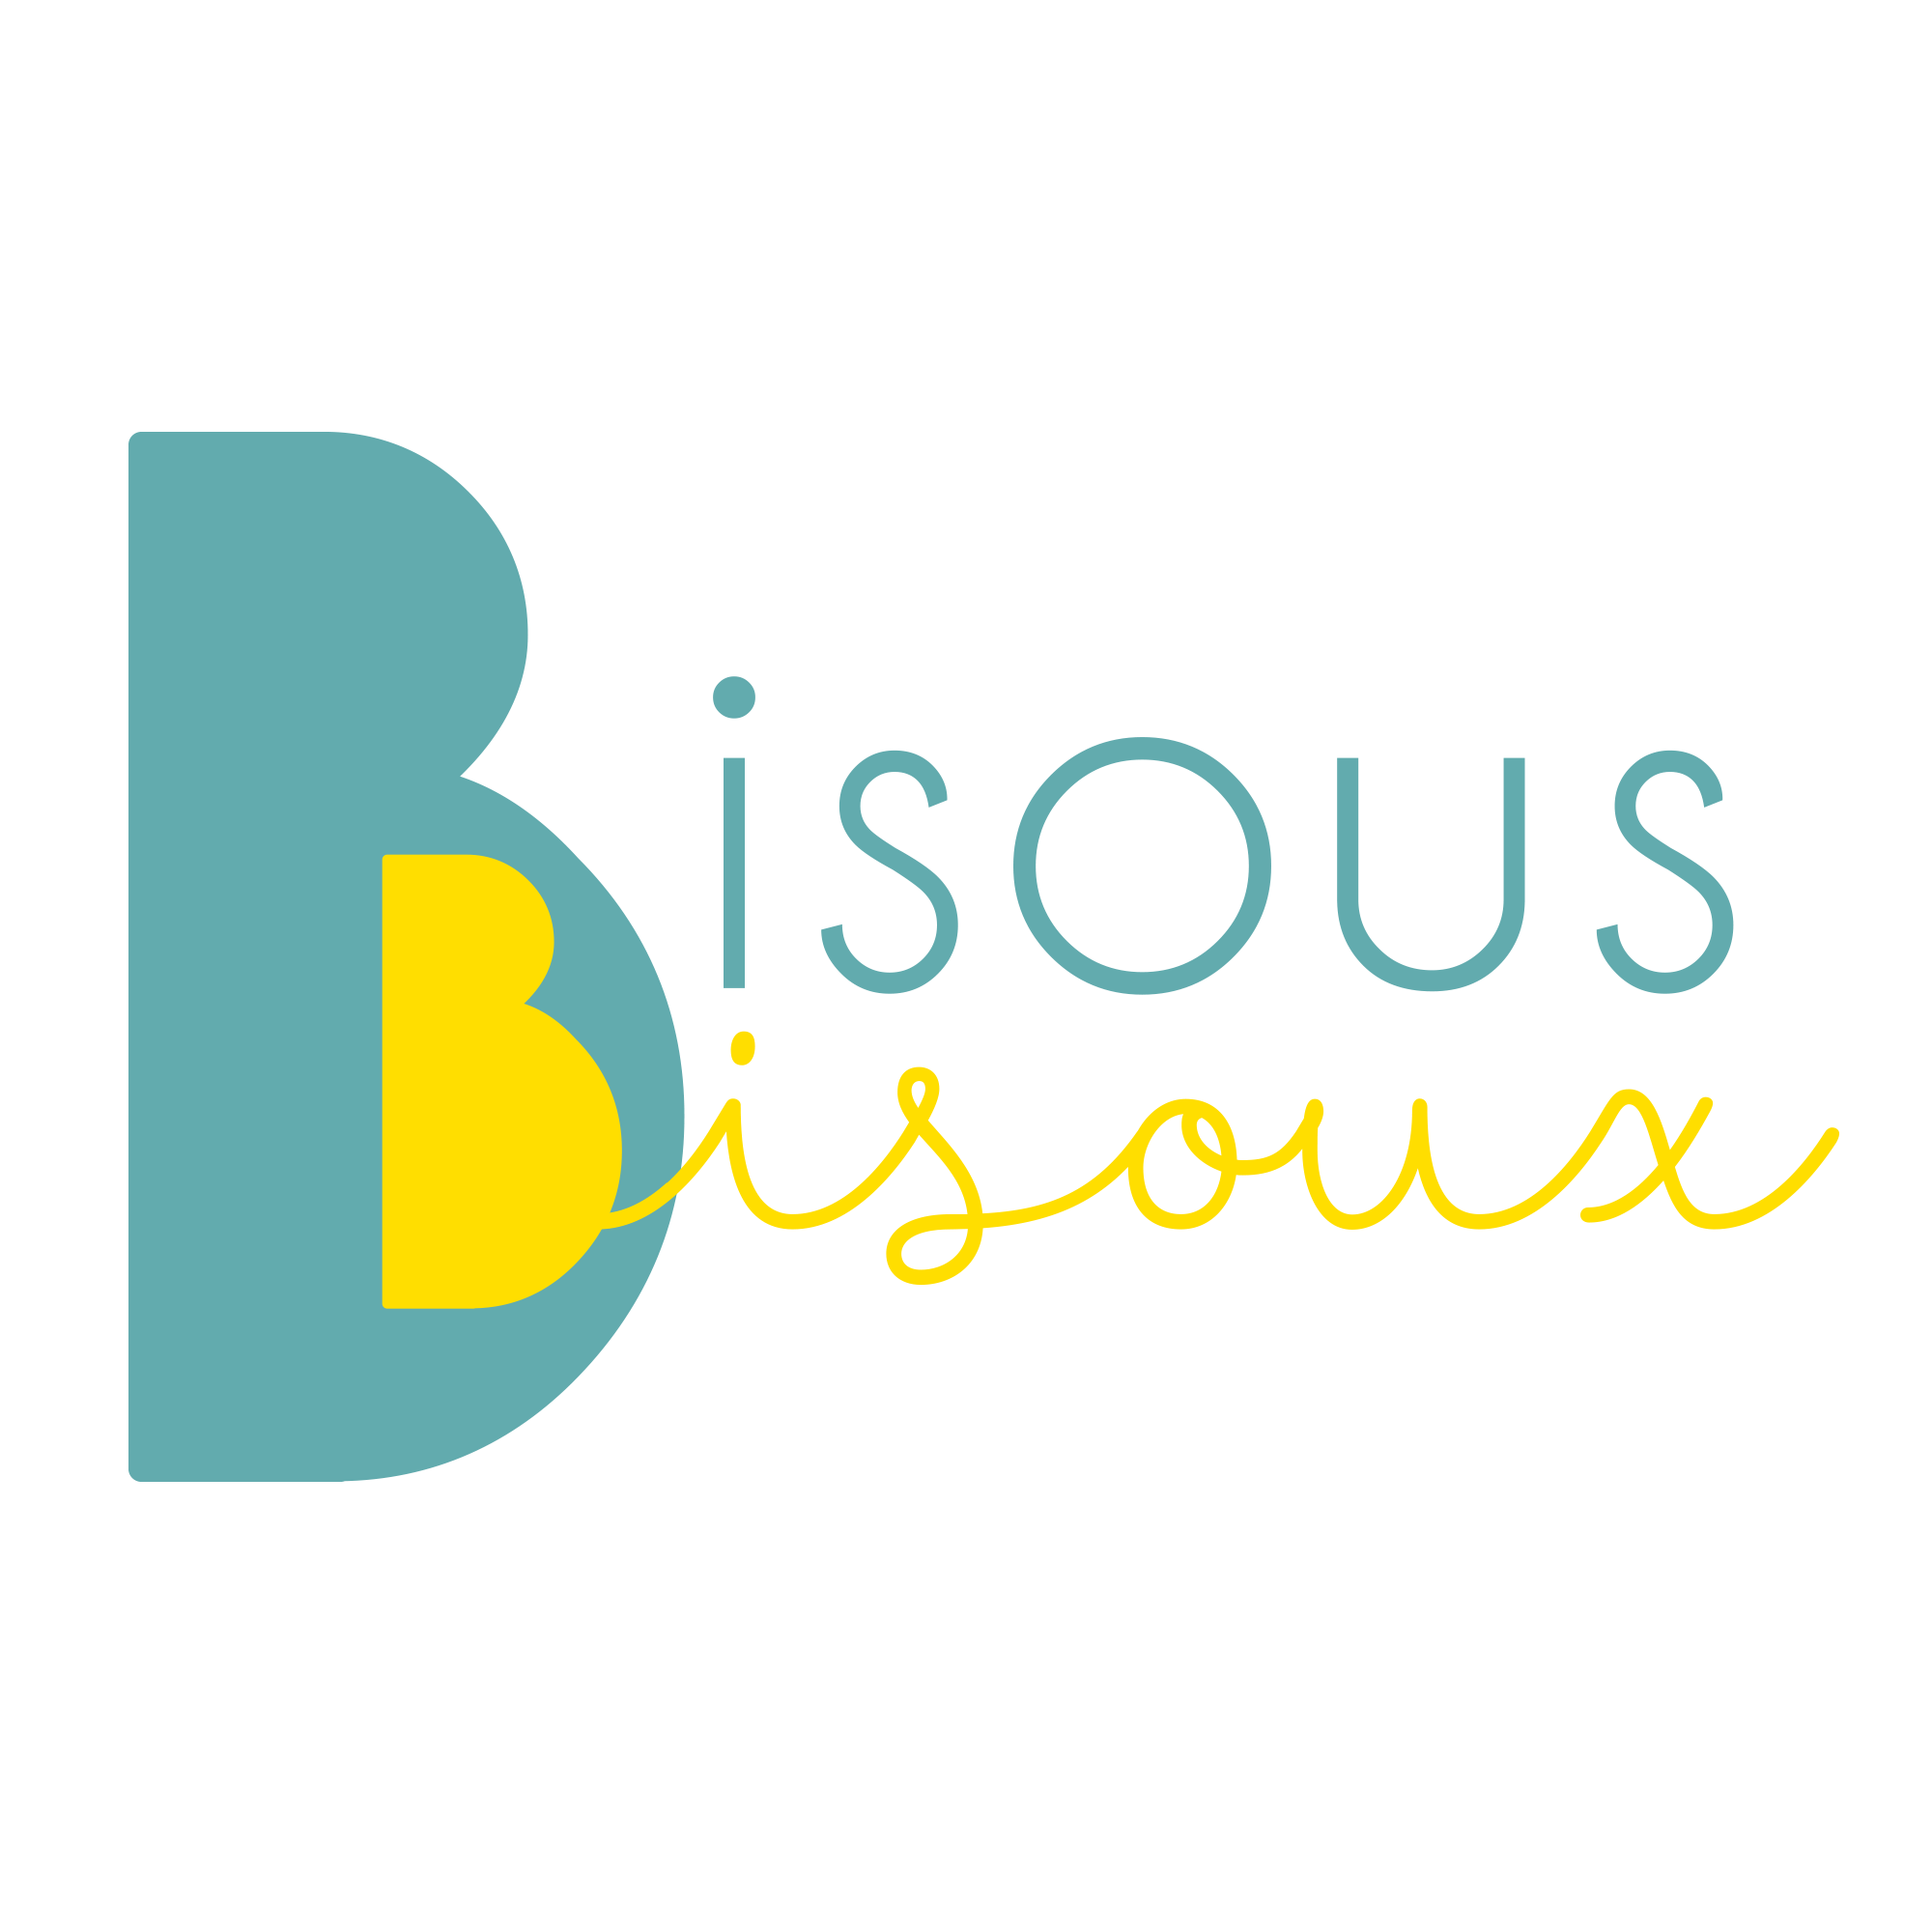 Bisous Bisoux